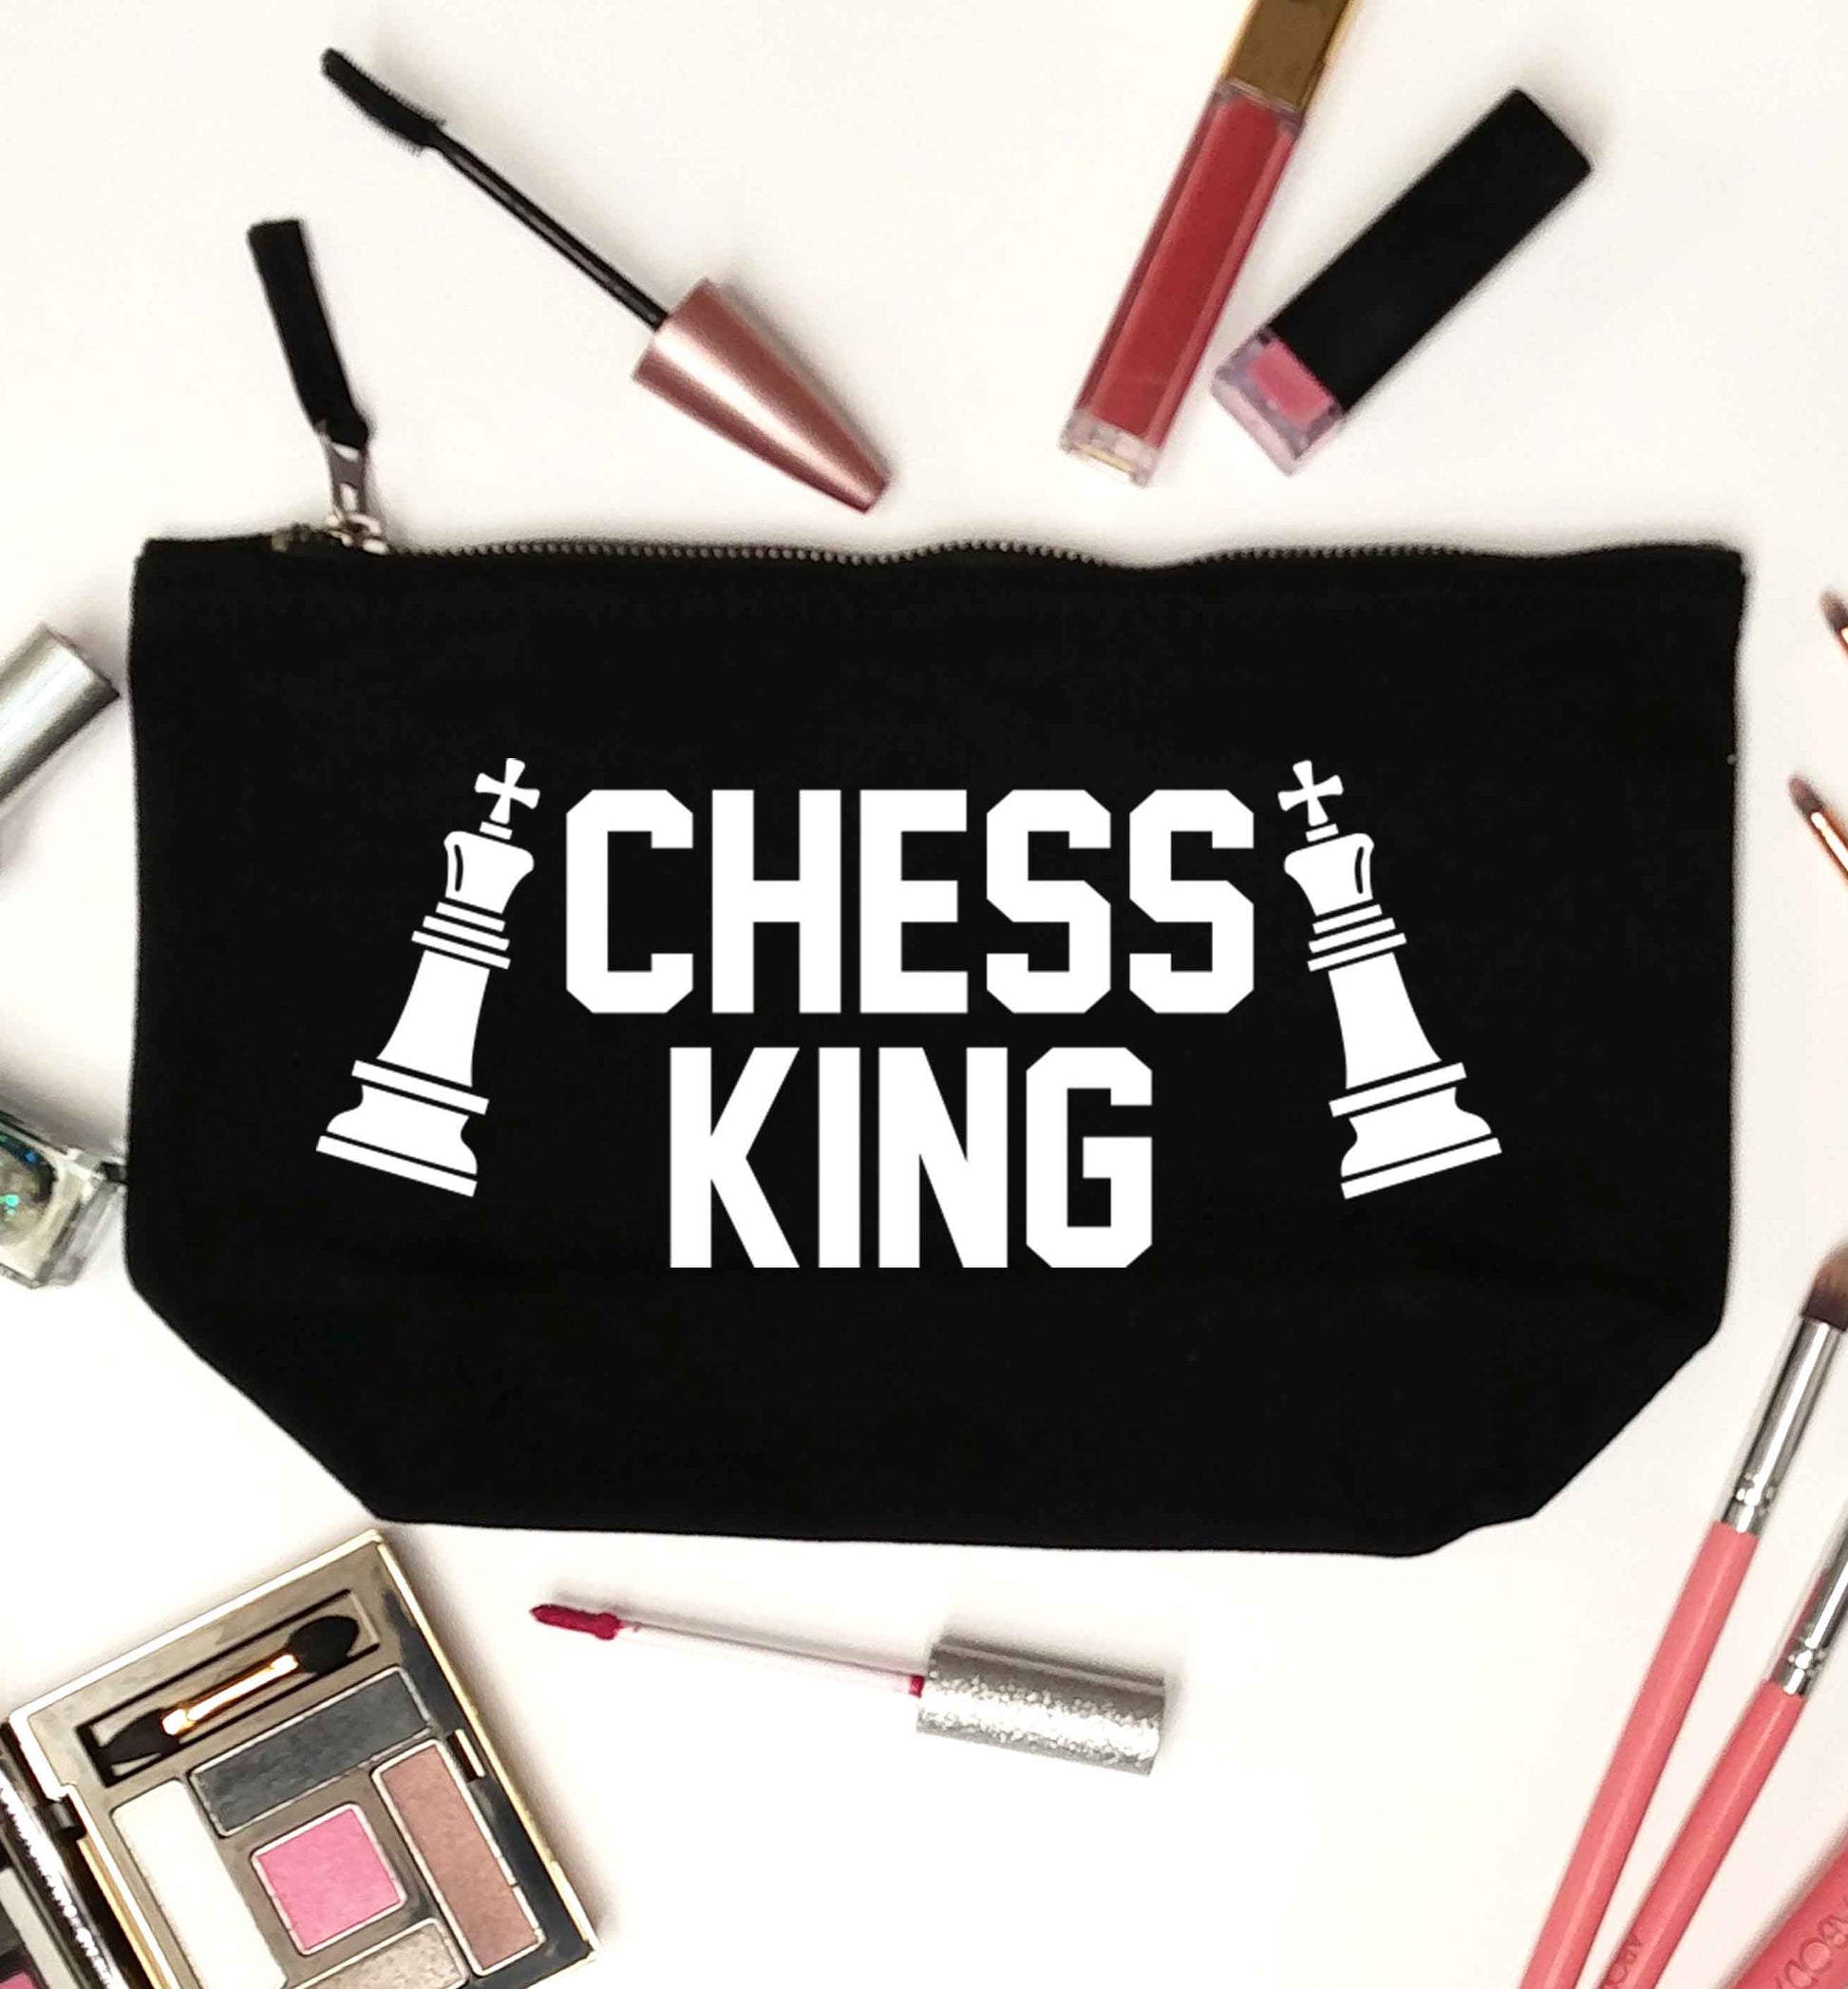 Chess king black makeup bag